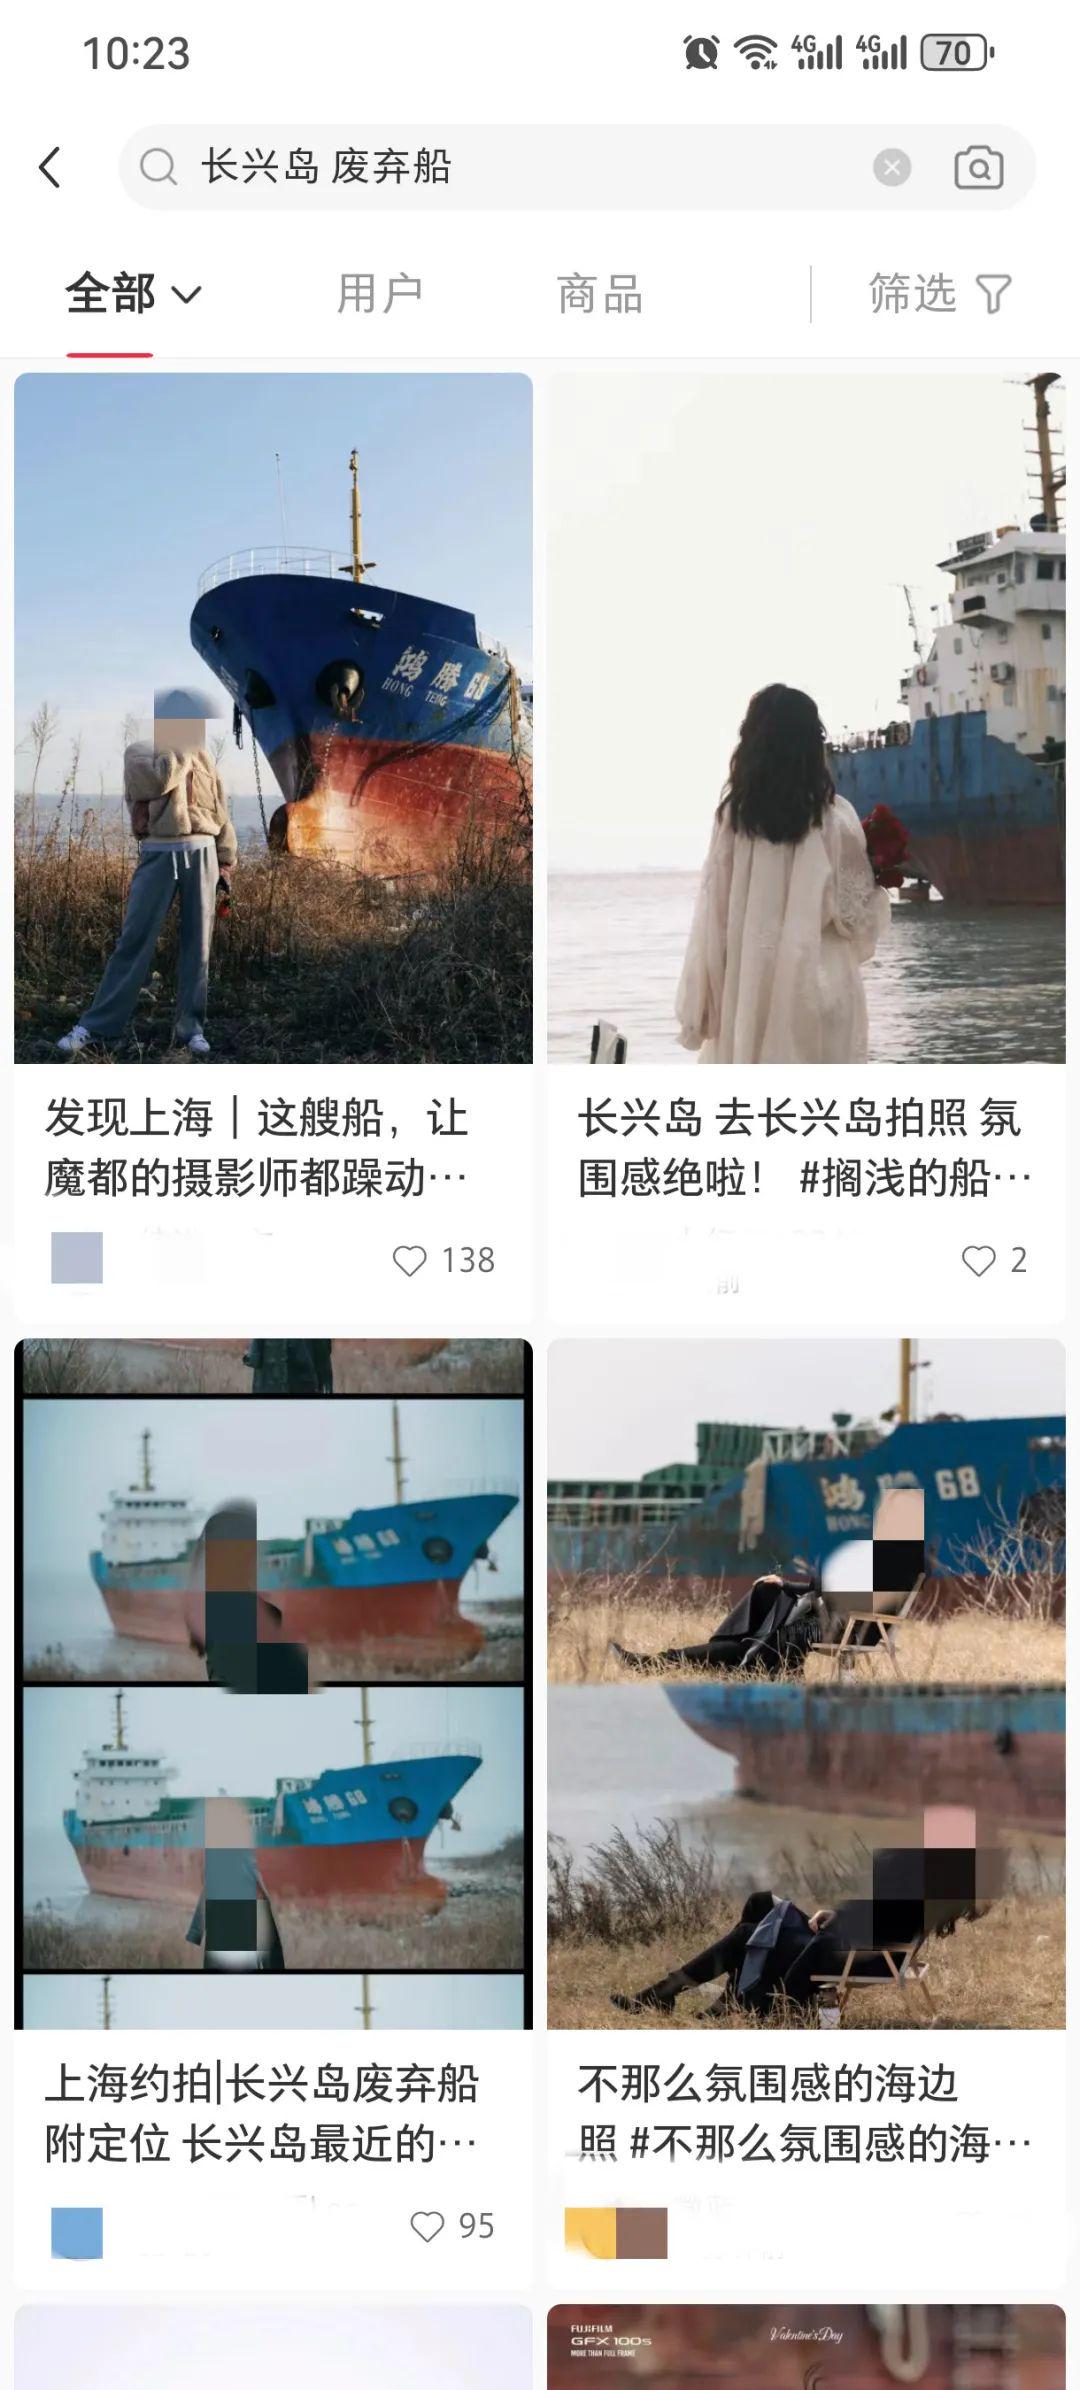 上海长兴岛，废弃船只成了网红打卡地？不少人攀爬登船，市民：太危险